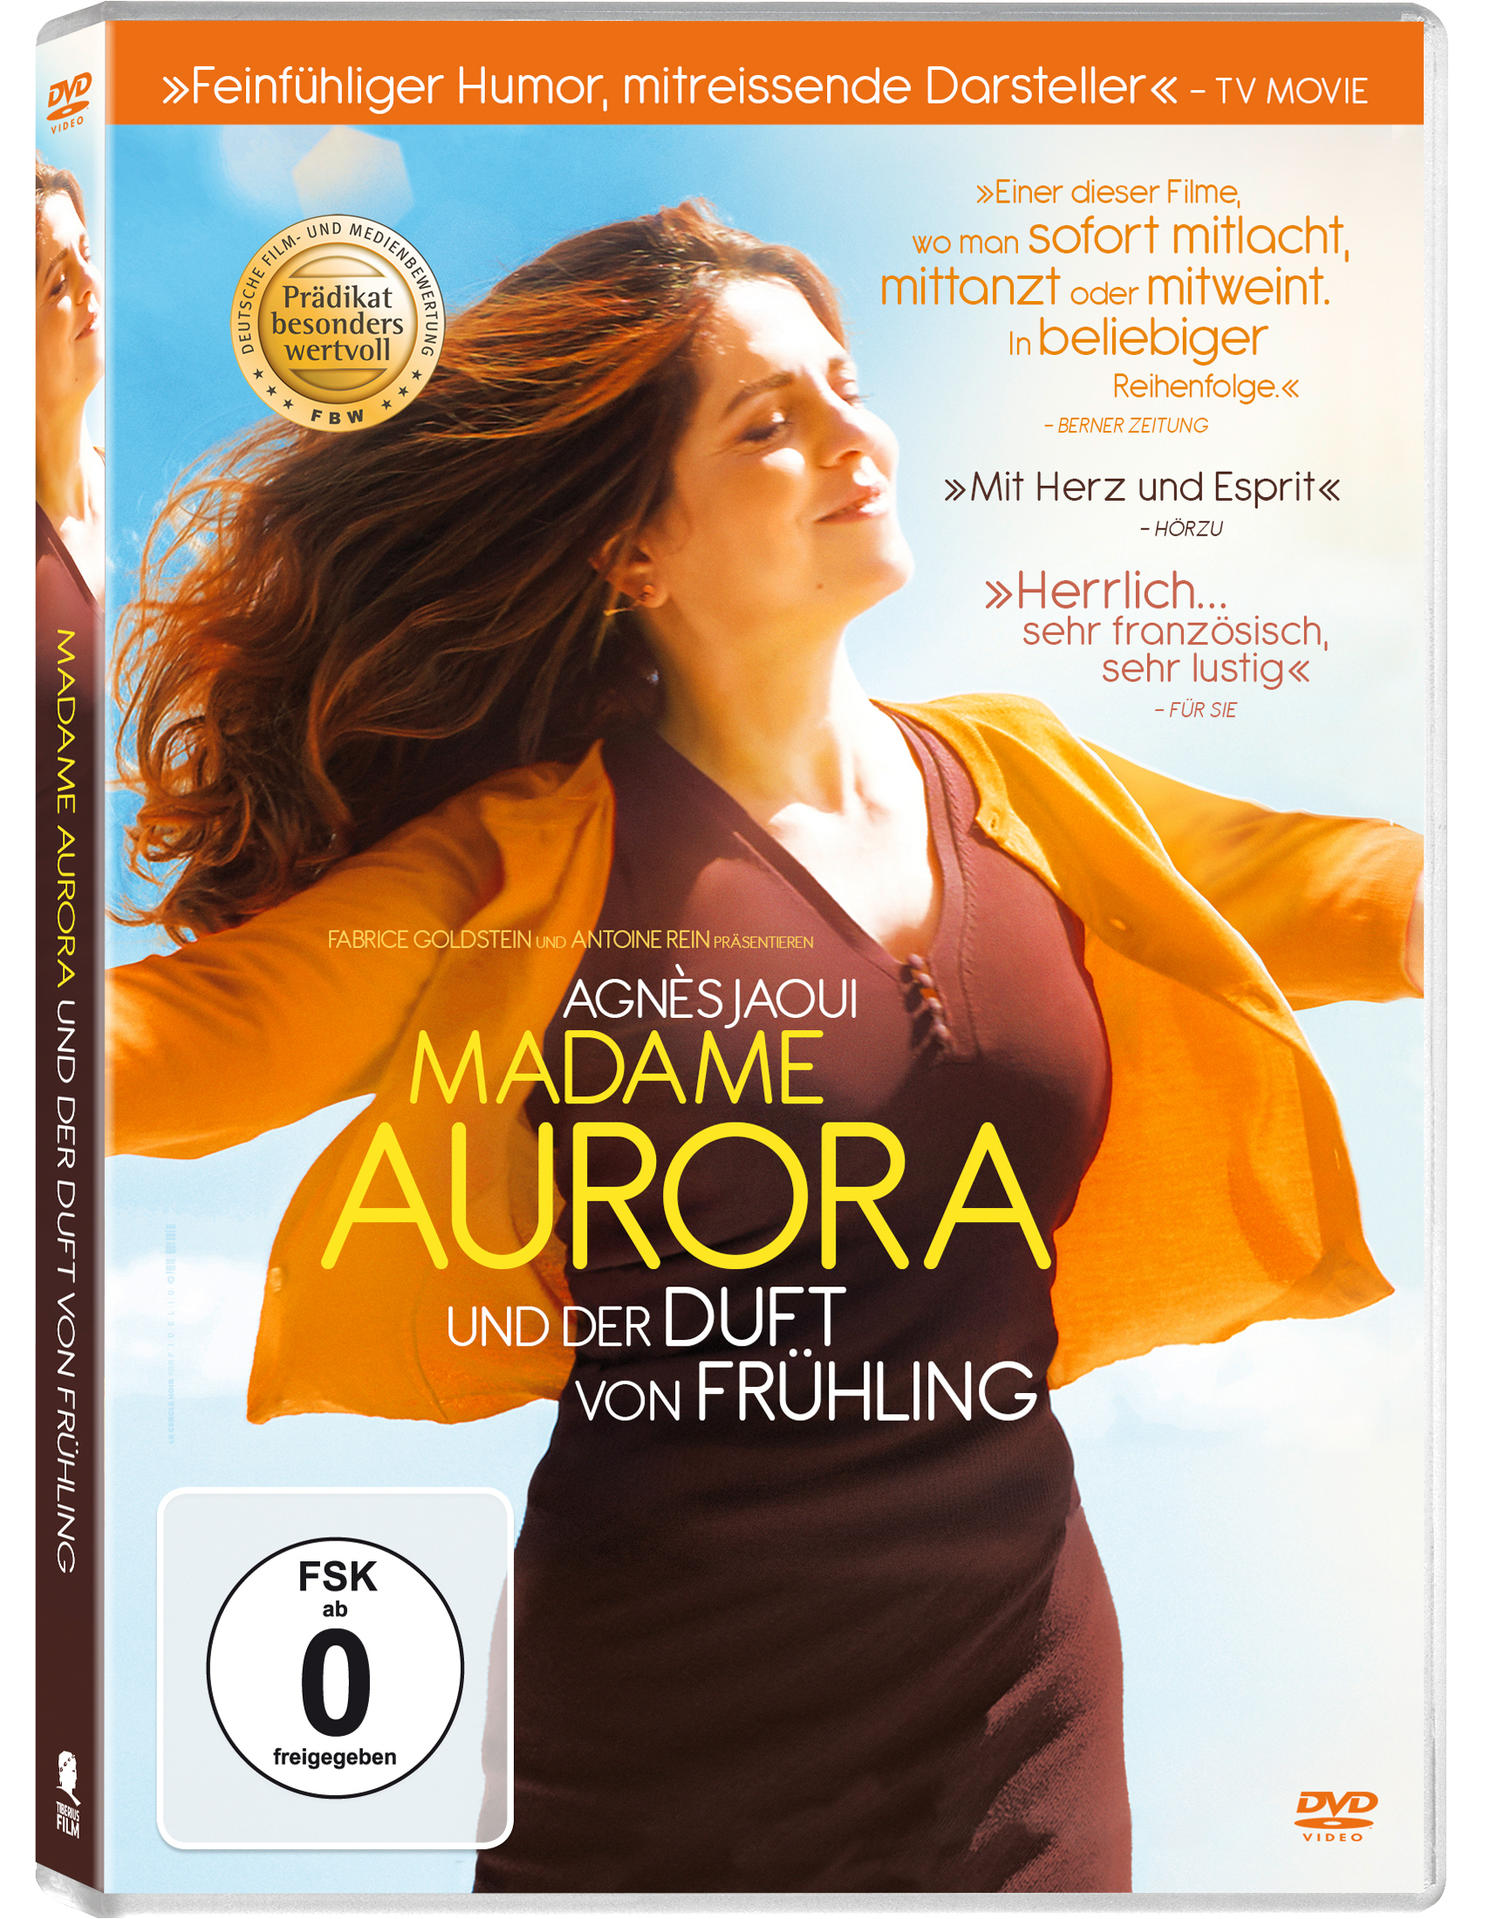 Madame Frühling von DVD Aurora und Duft der